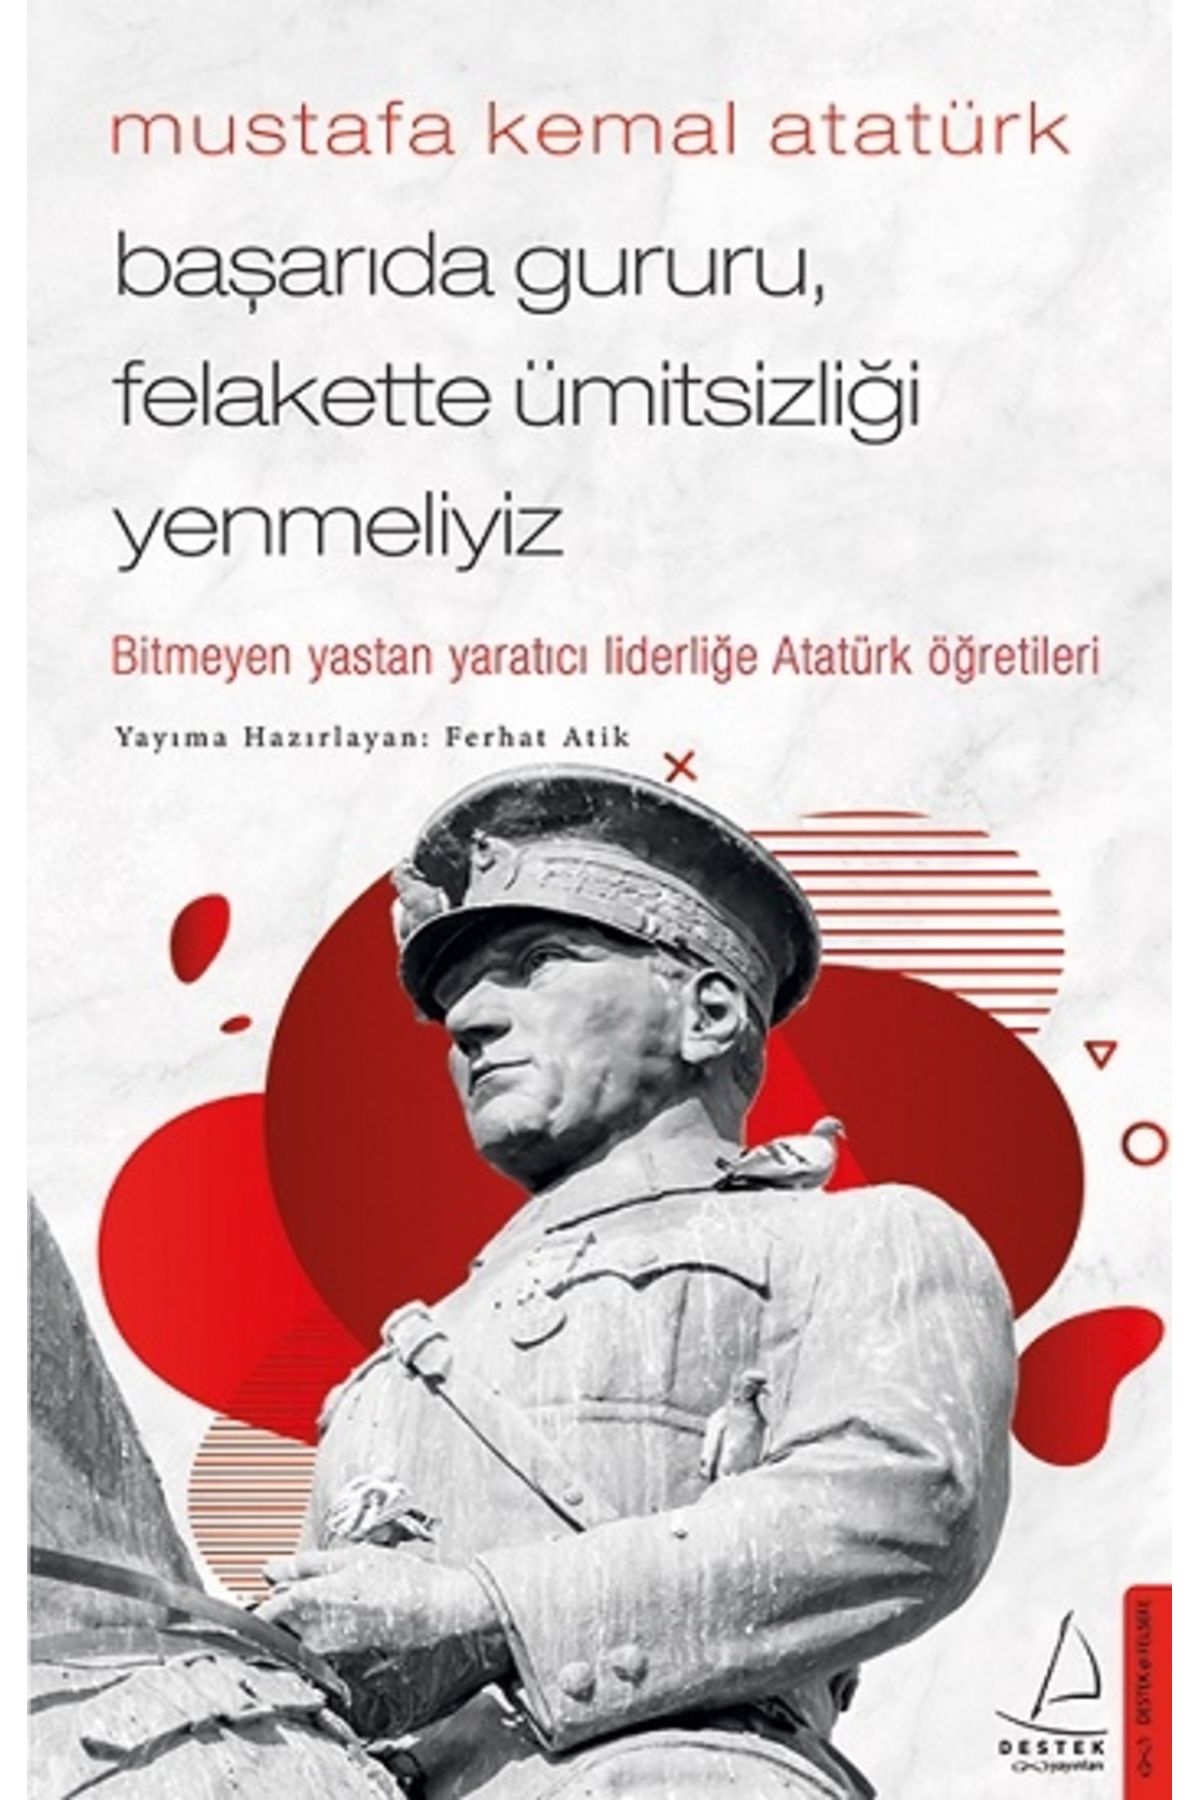 Destek Yayınları Mustafa Kemal Atatürk - Başarıda Gururu, Felakette Ümitsizliği Yenmeliyiz